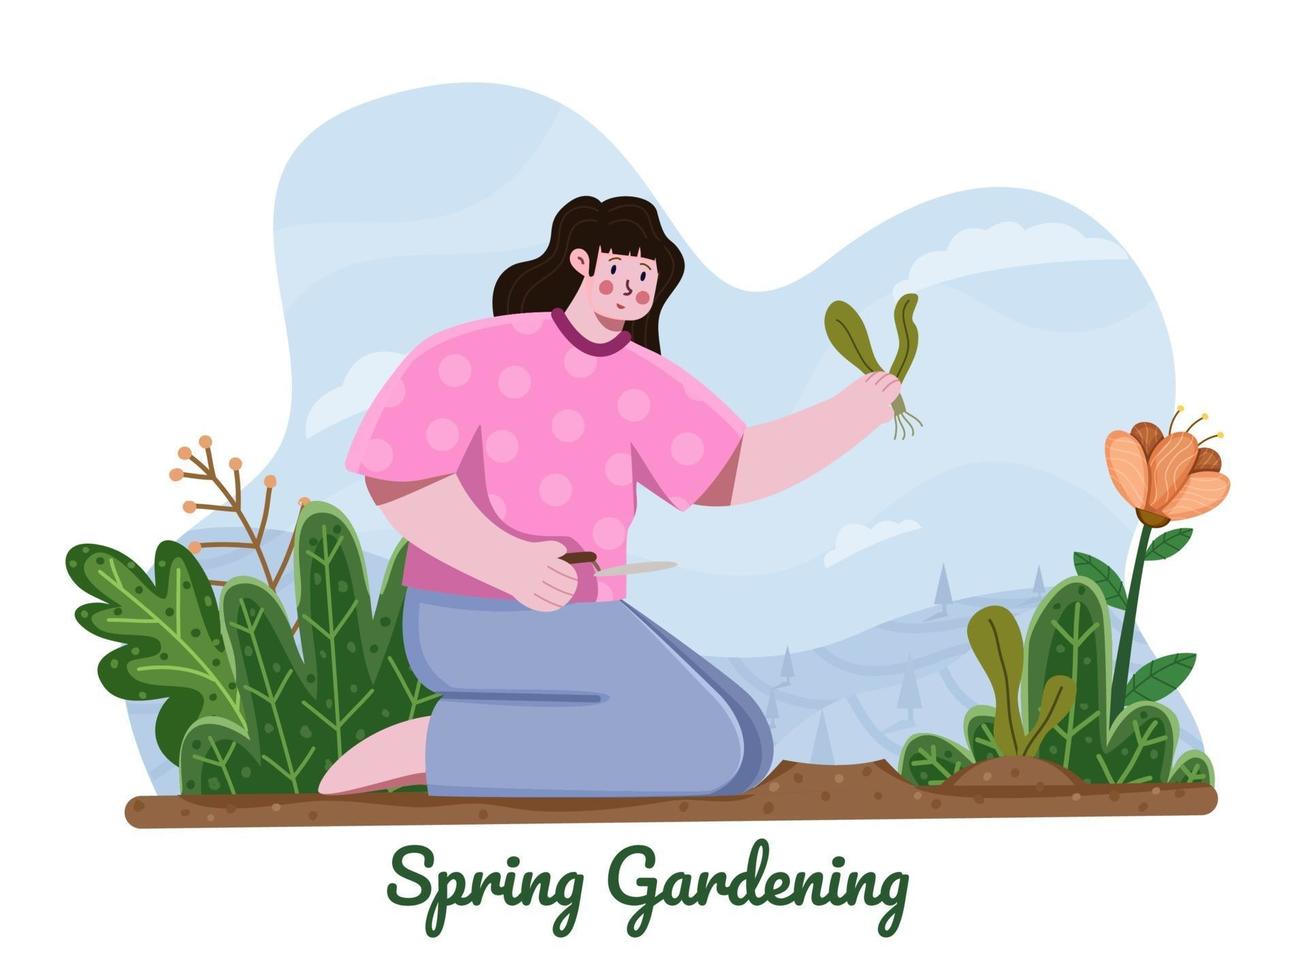 mulher plantando flores no jardim na primavera. atividade de jardinagem nas férias da primavera. flor de jardinagem ao ar livre da primavera. ilustração plana de mulheres que trabalham no jardim. recreação na primavera. vetor